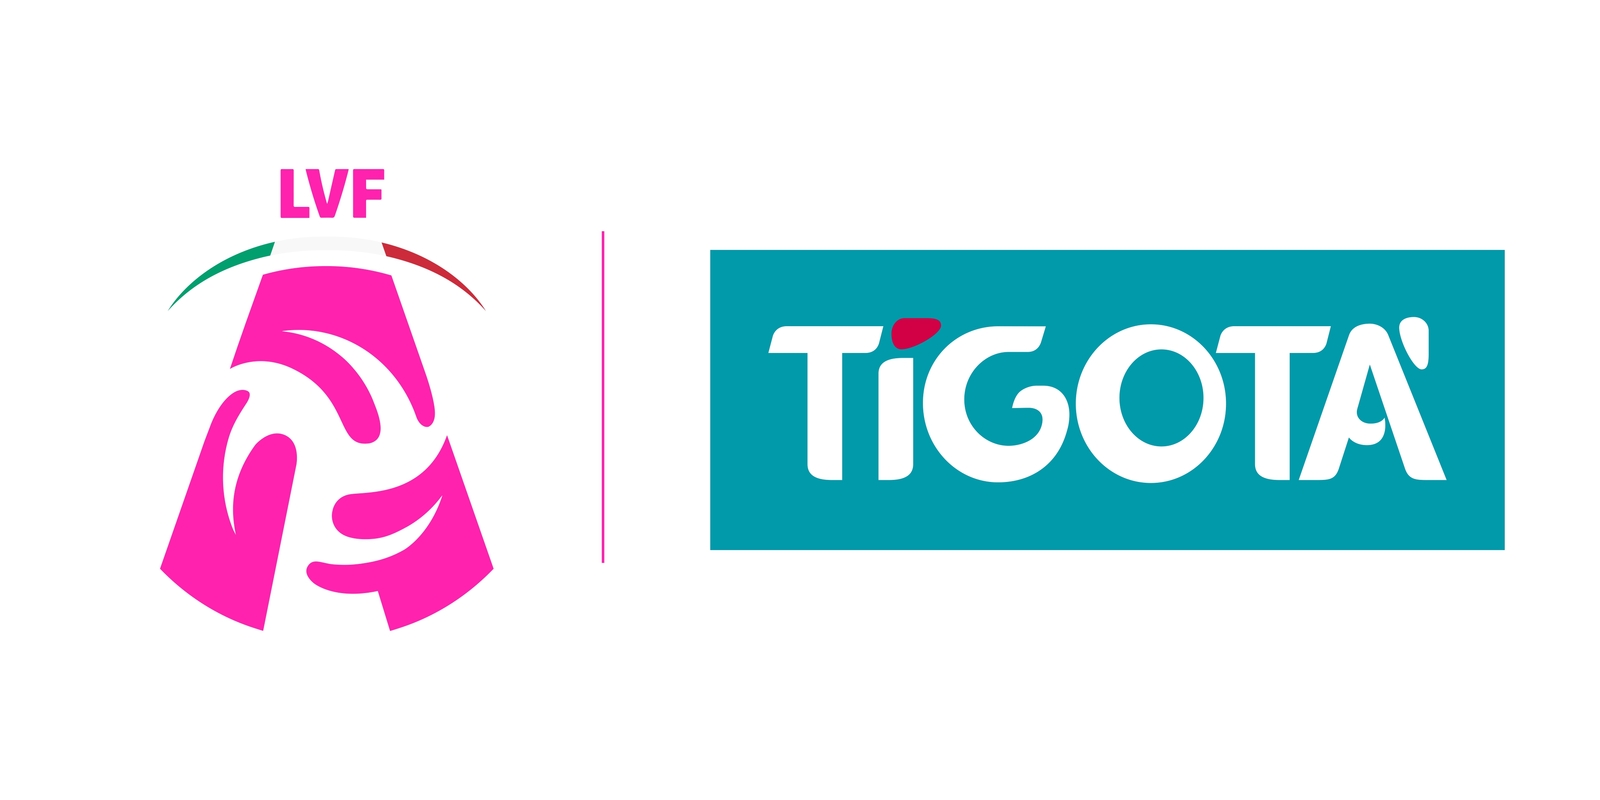 Tigotà è il nuovo title sponsor dei Campionati di Pallavolo Serie A Femminile